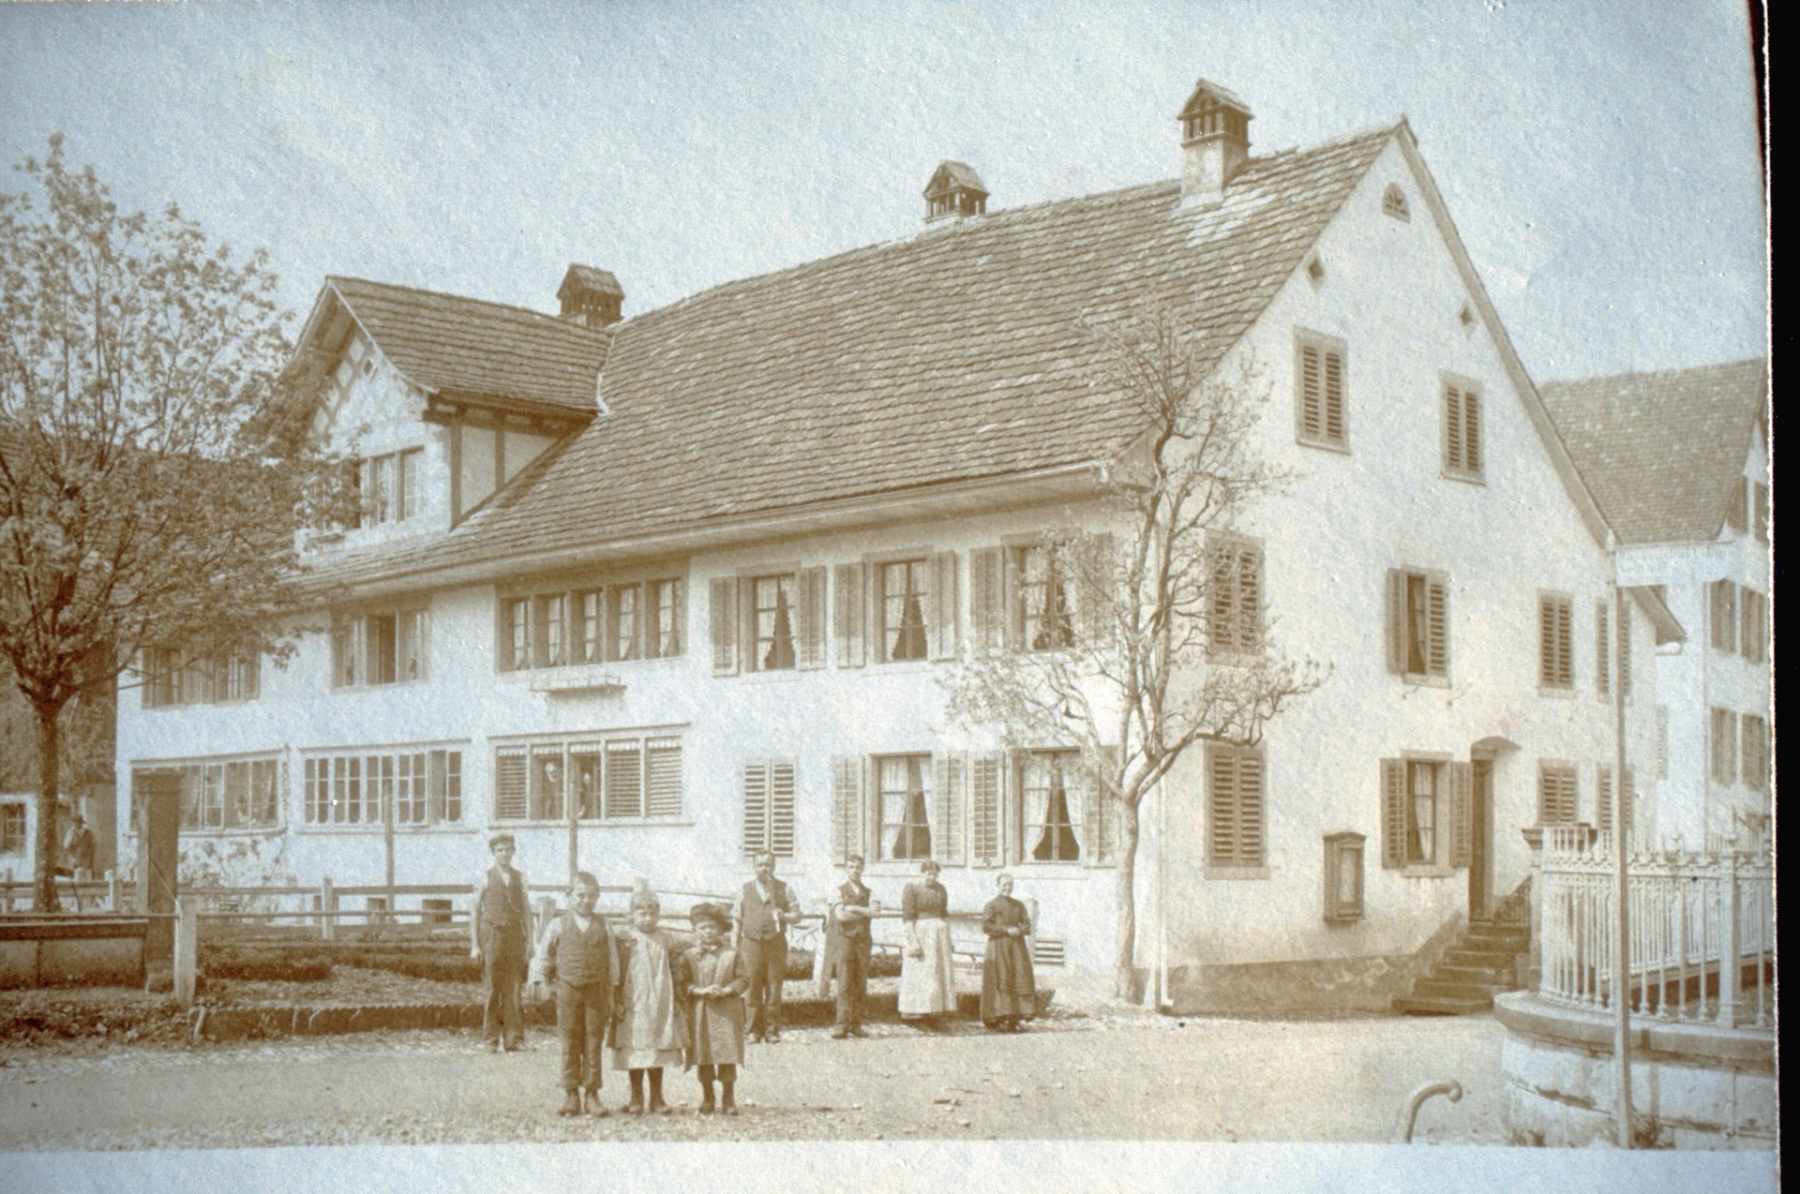 Dorfplatz-Schulhausstrasse Flarzhaus